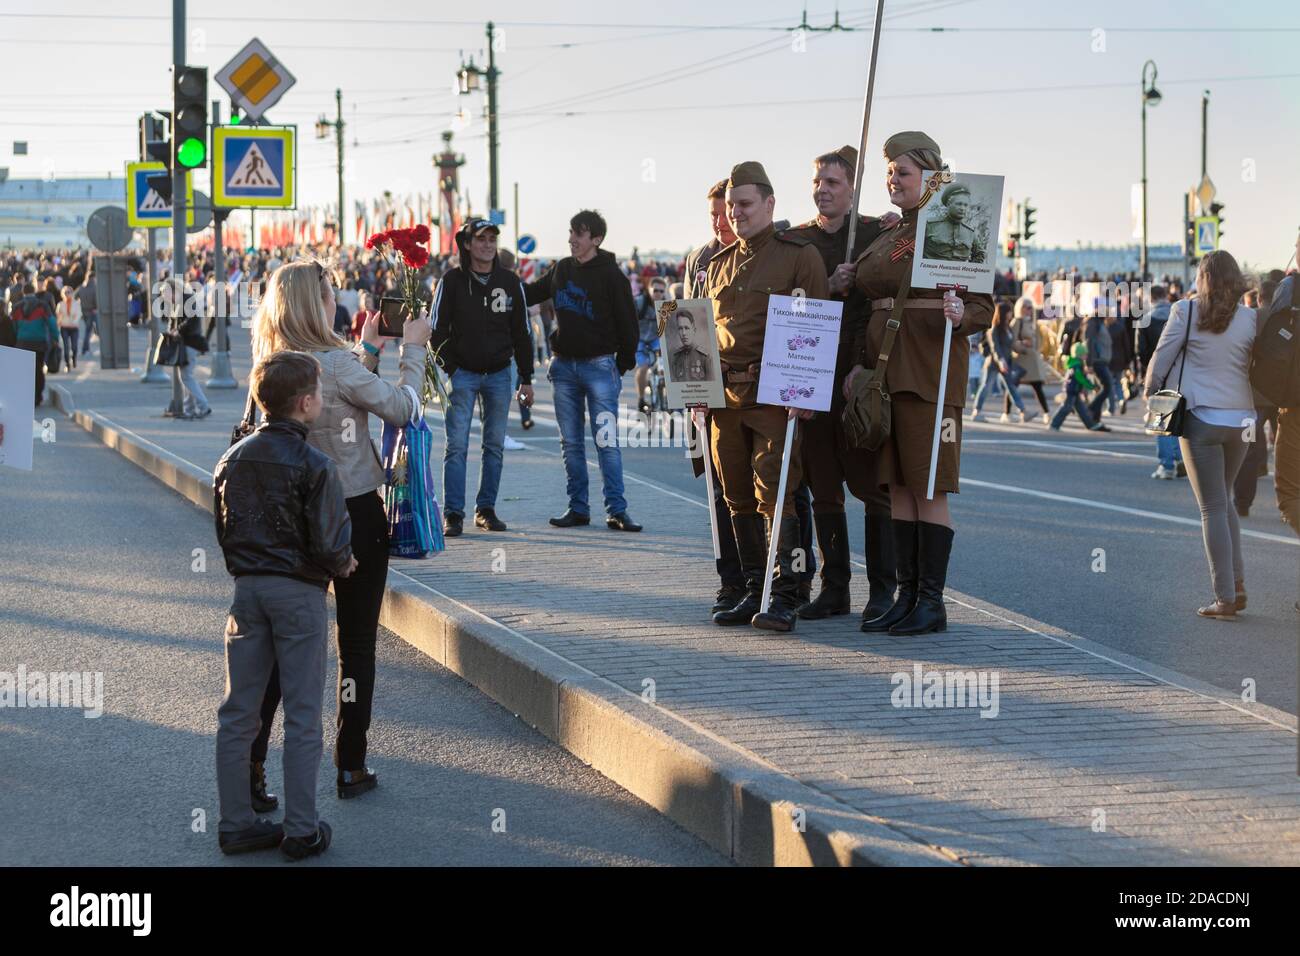 SANKT-PETERSBURG, RUSSLAND-9. MAI 2015: Familie macht Bild von Menschen gekleidet sowjetischen Uniform im Zentrum der Stadt. Feier des 70. Jahrestages der Stockfoto